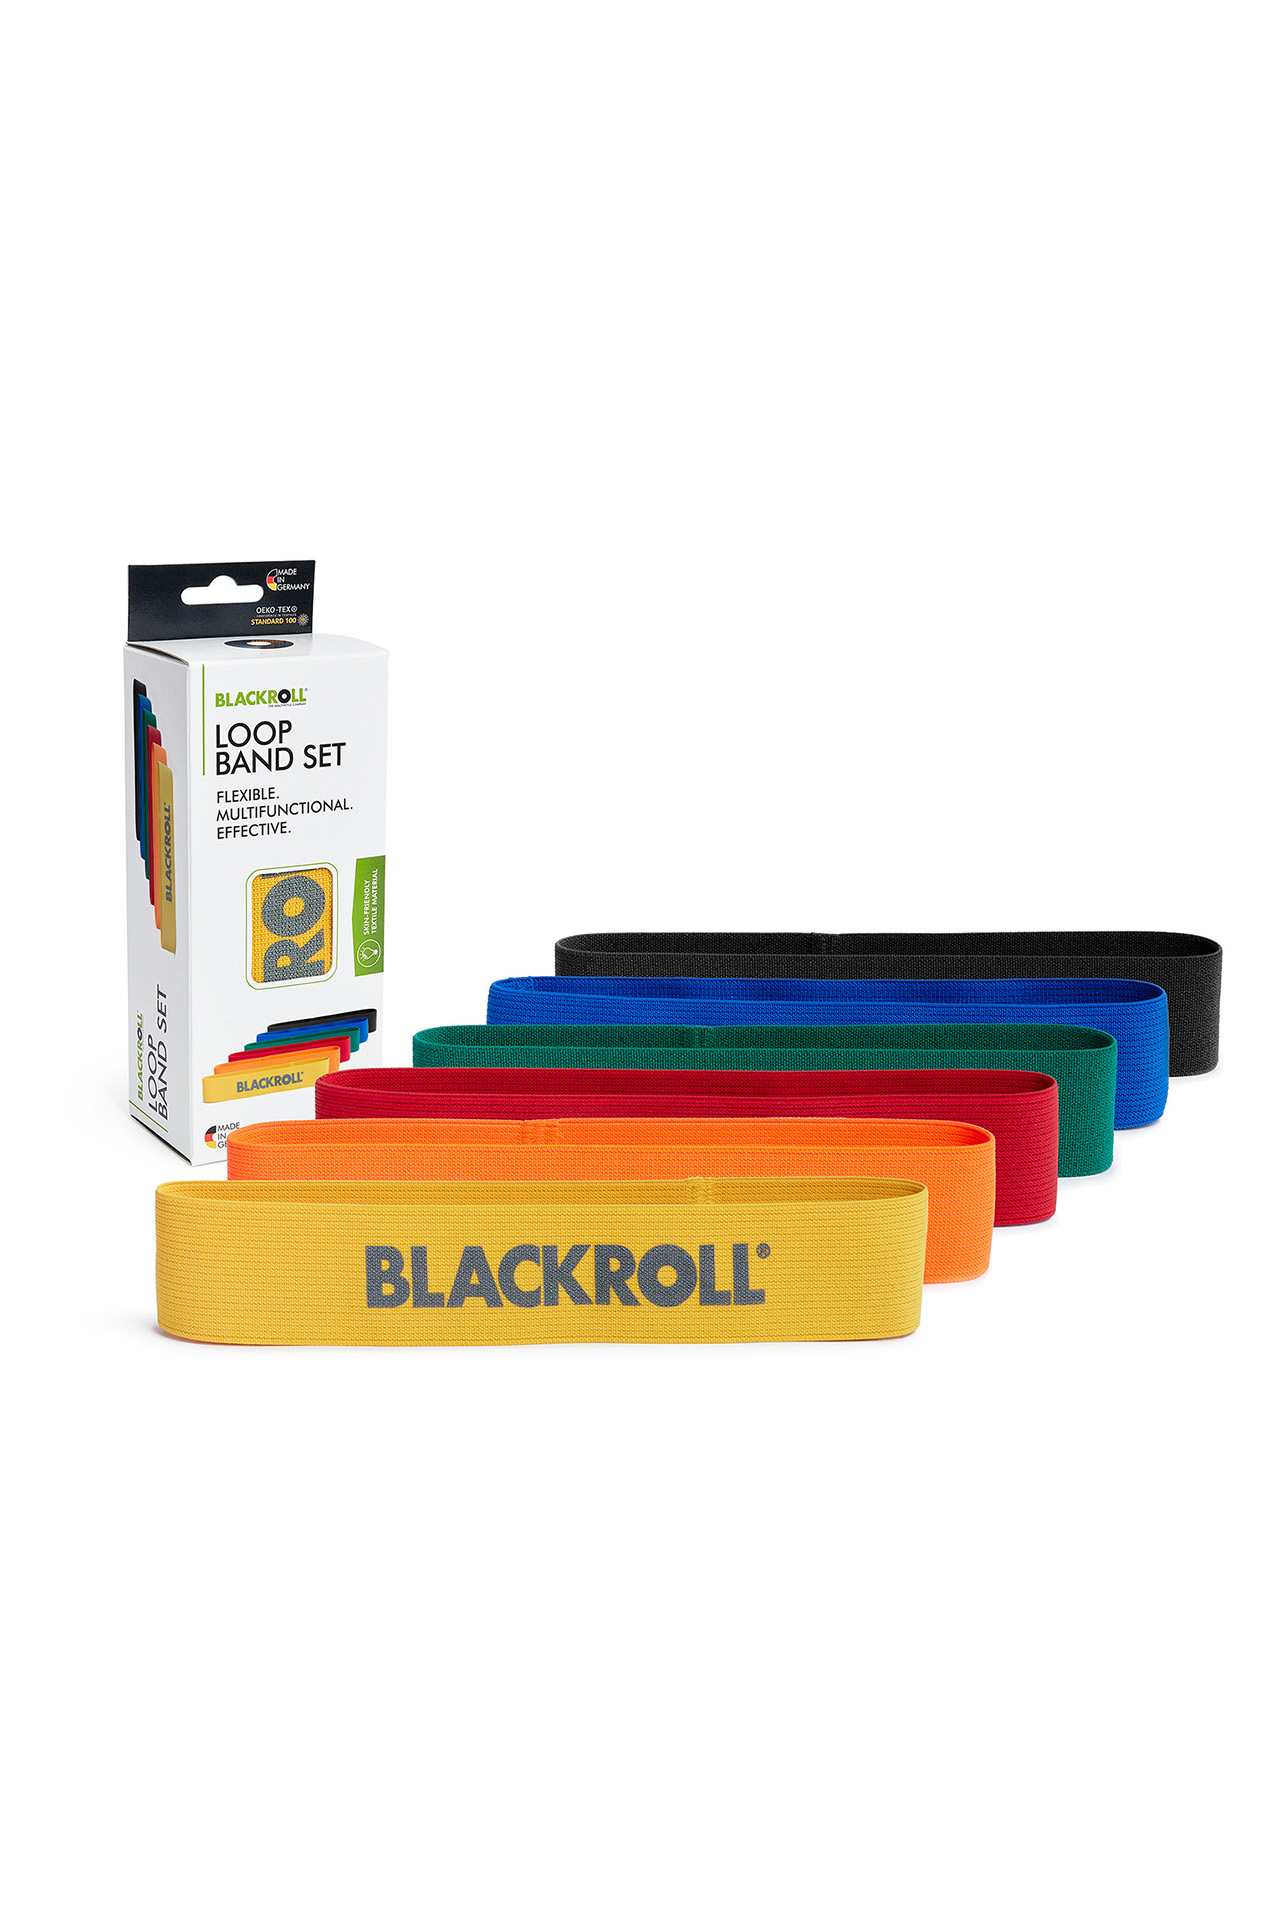 blackroll loop band set training fengbao shop 1080 verpackung wien